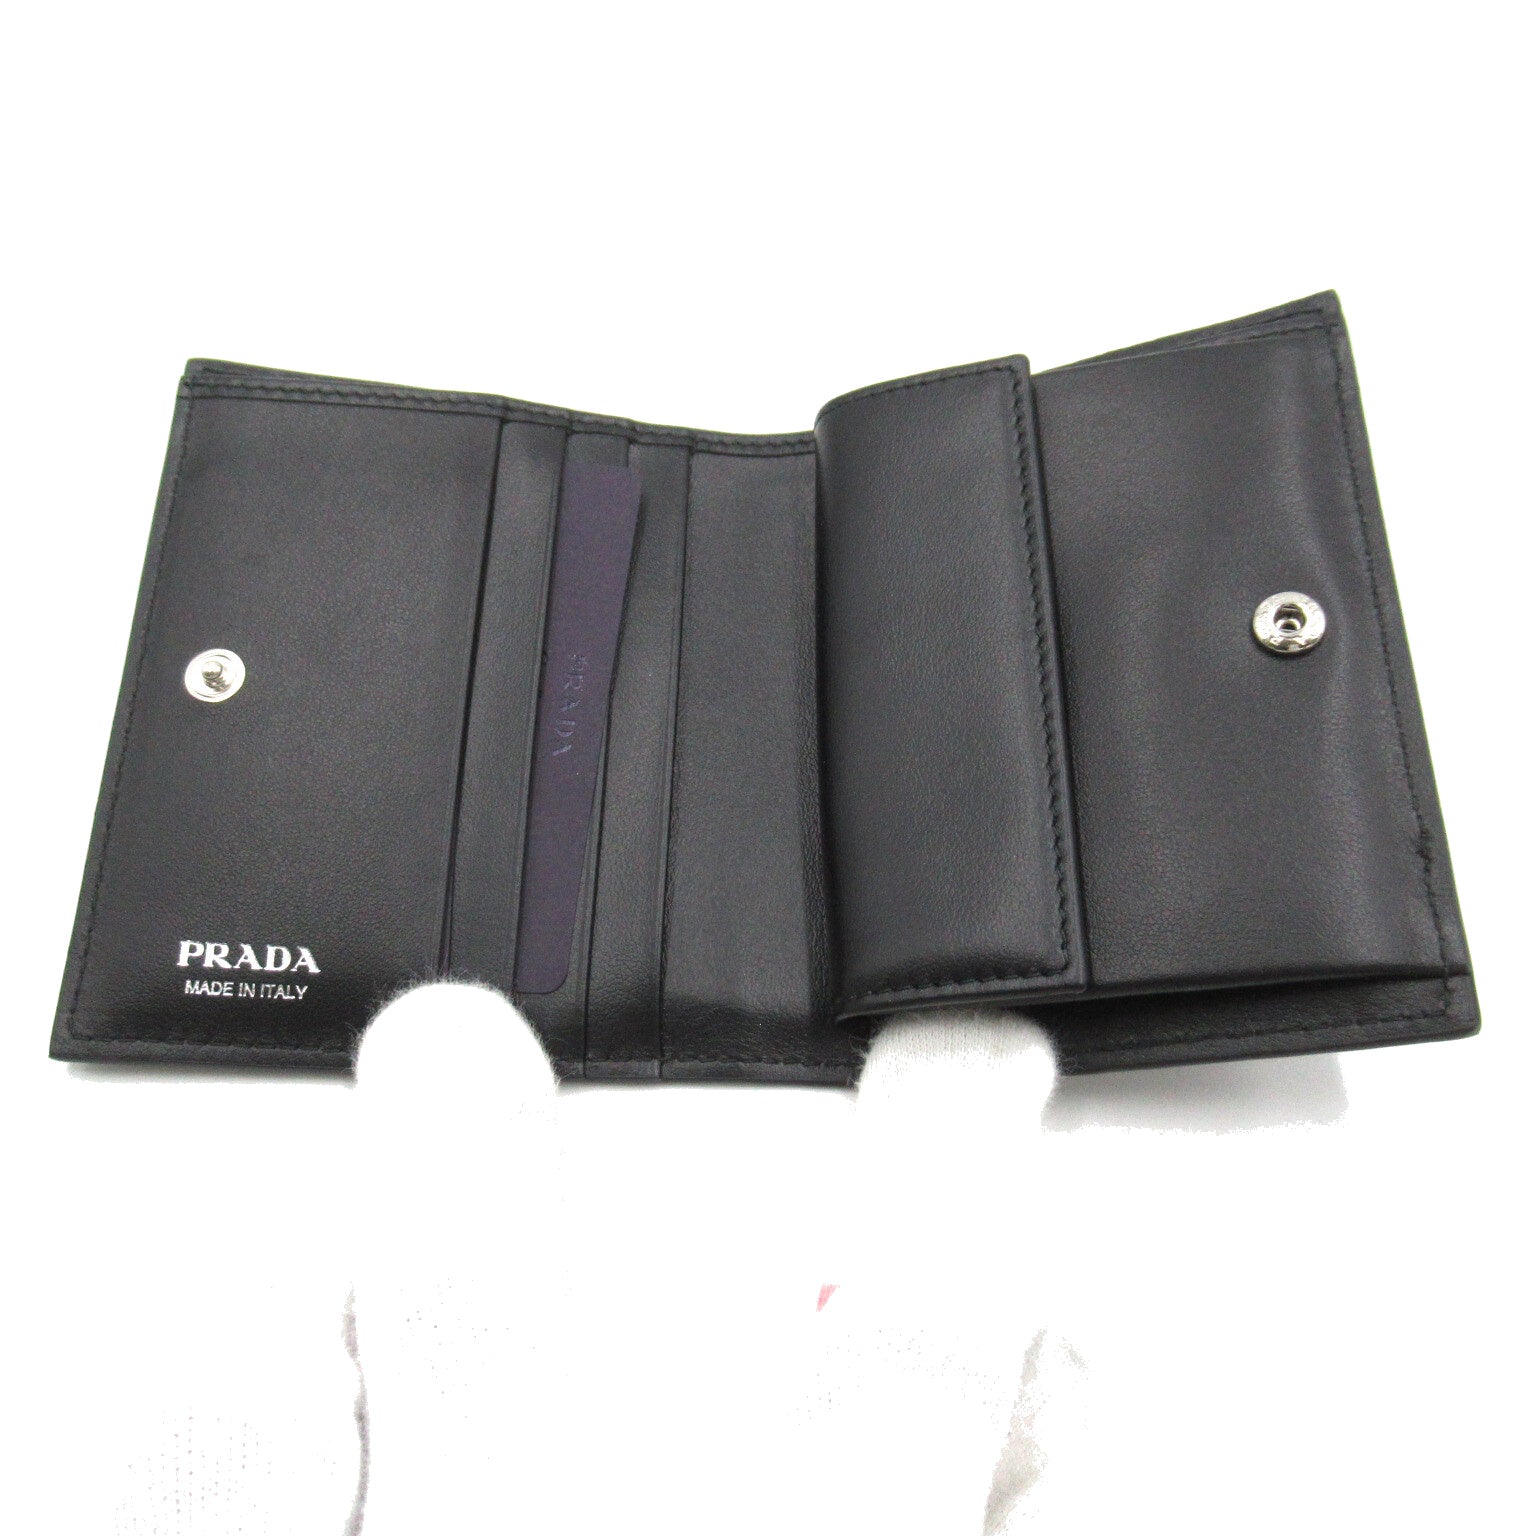 Prada Twin Fold Wallet Twin Folded Wallet    Black 1MV204ZO6F0002